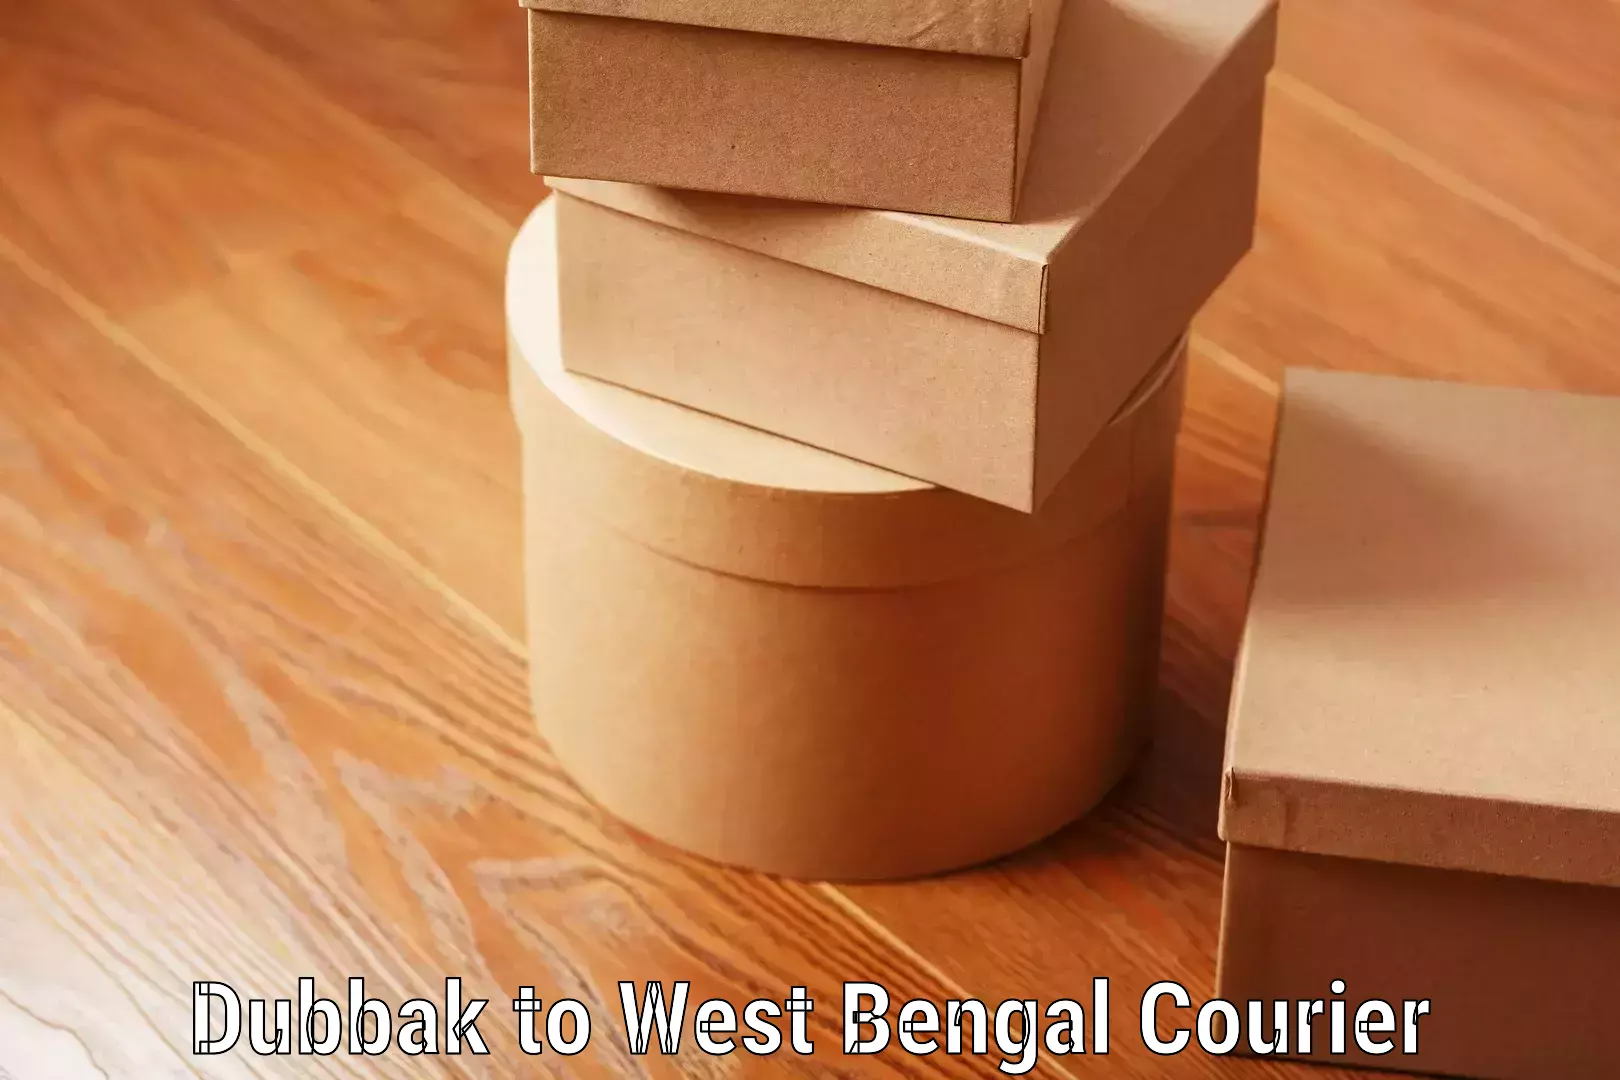 Urgent luggage shipment Dubbak to West Bengal